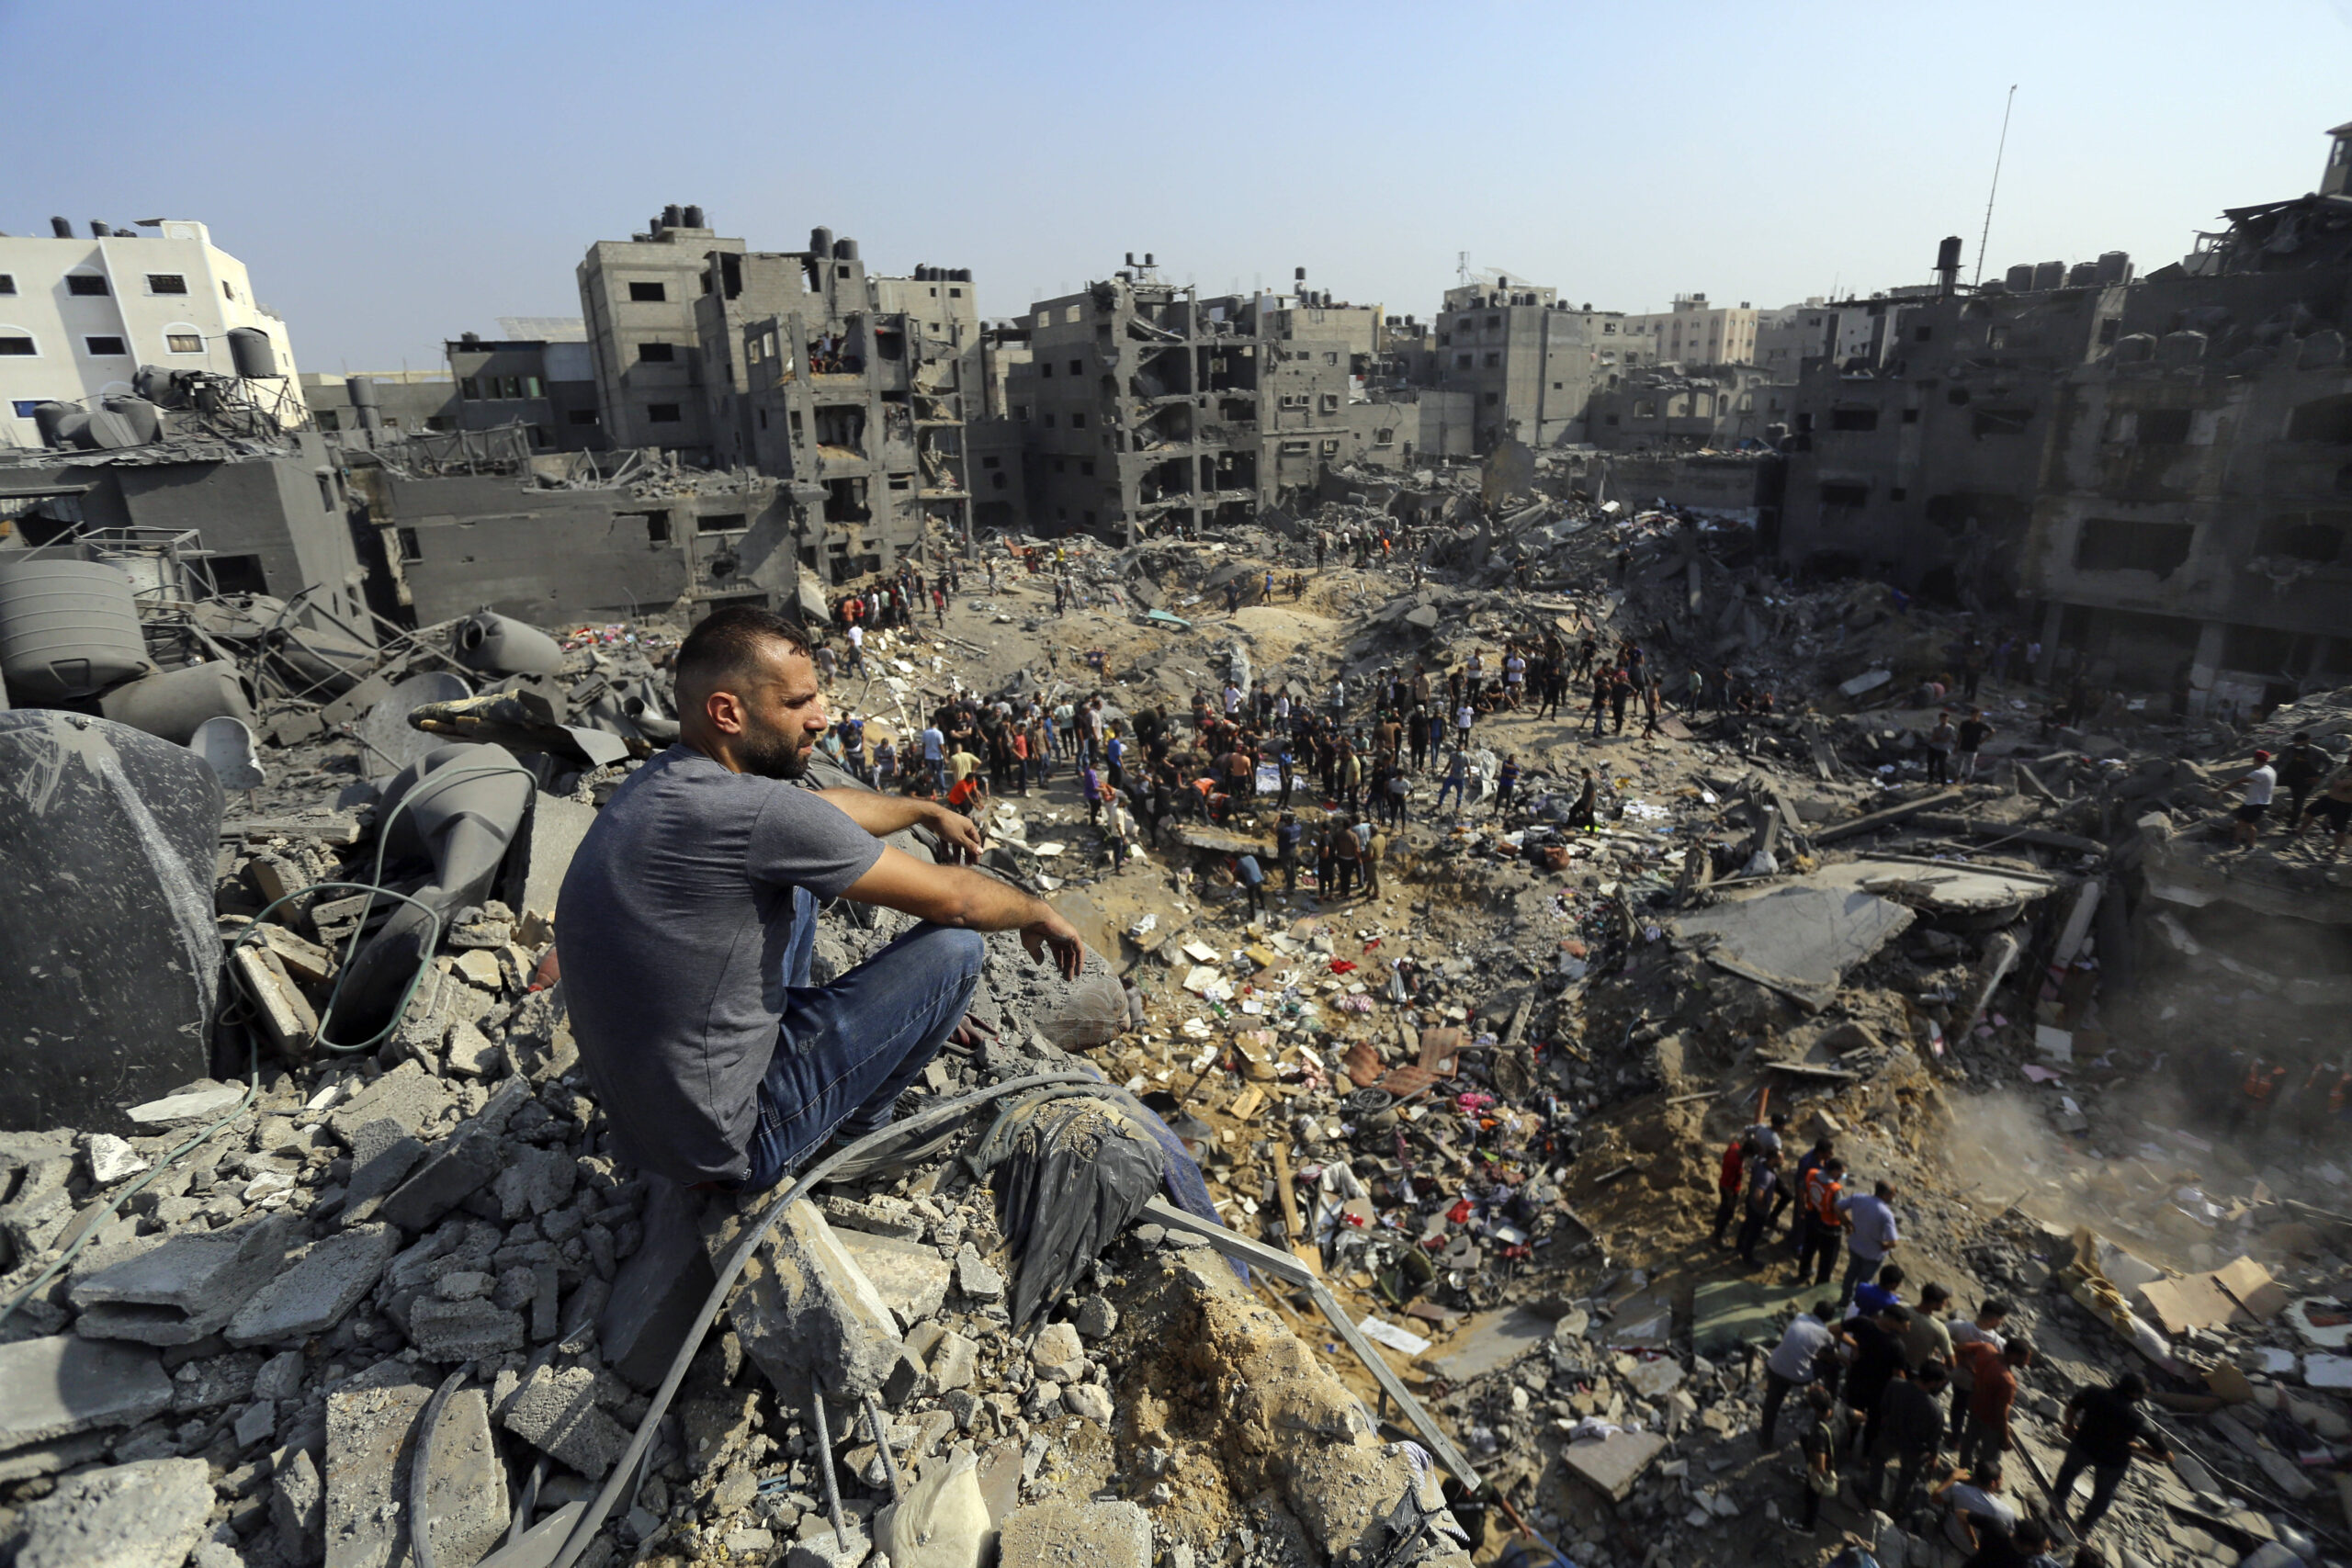 Un homme est assis sur les décombres tandis que d'autres se promènent parmi les débris des bâtiments qui ont été ciblés par les frappes aériennes israéliennes dans le camp de réfugiés de Jabaliya, dans le nord de la bande de Gaza, mercredi 1er novembre. AP Photo/Abed Khaled